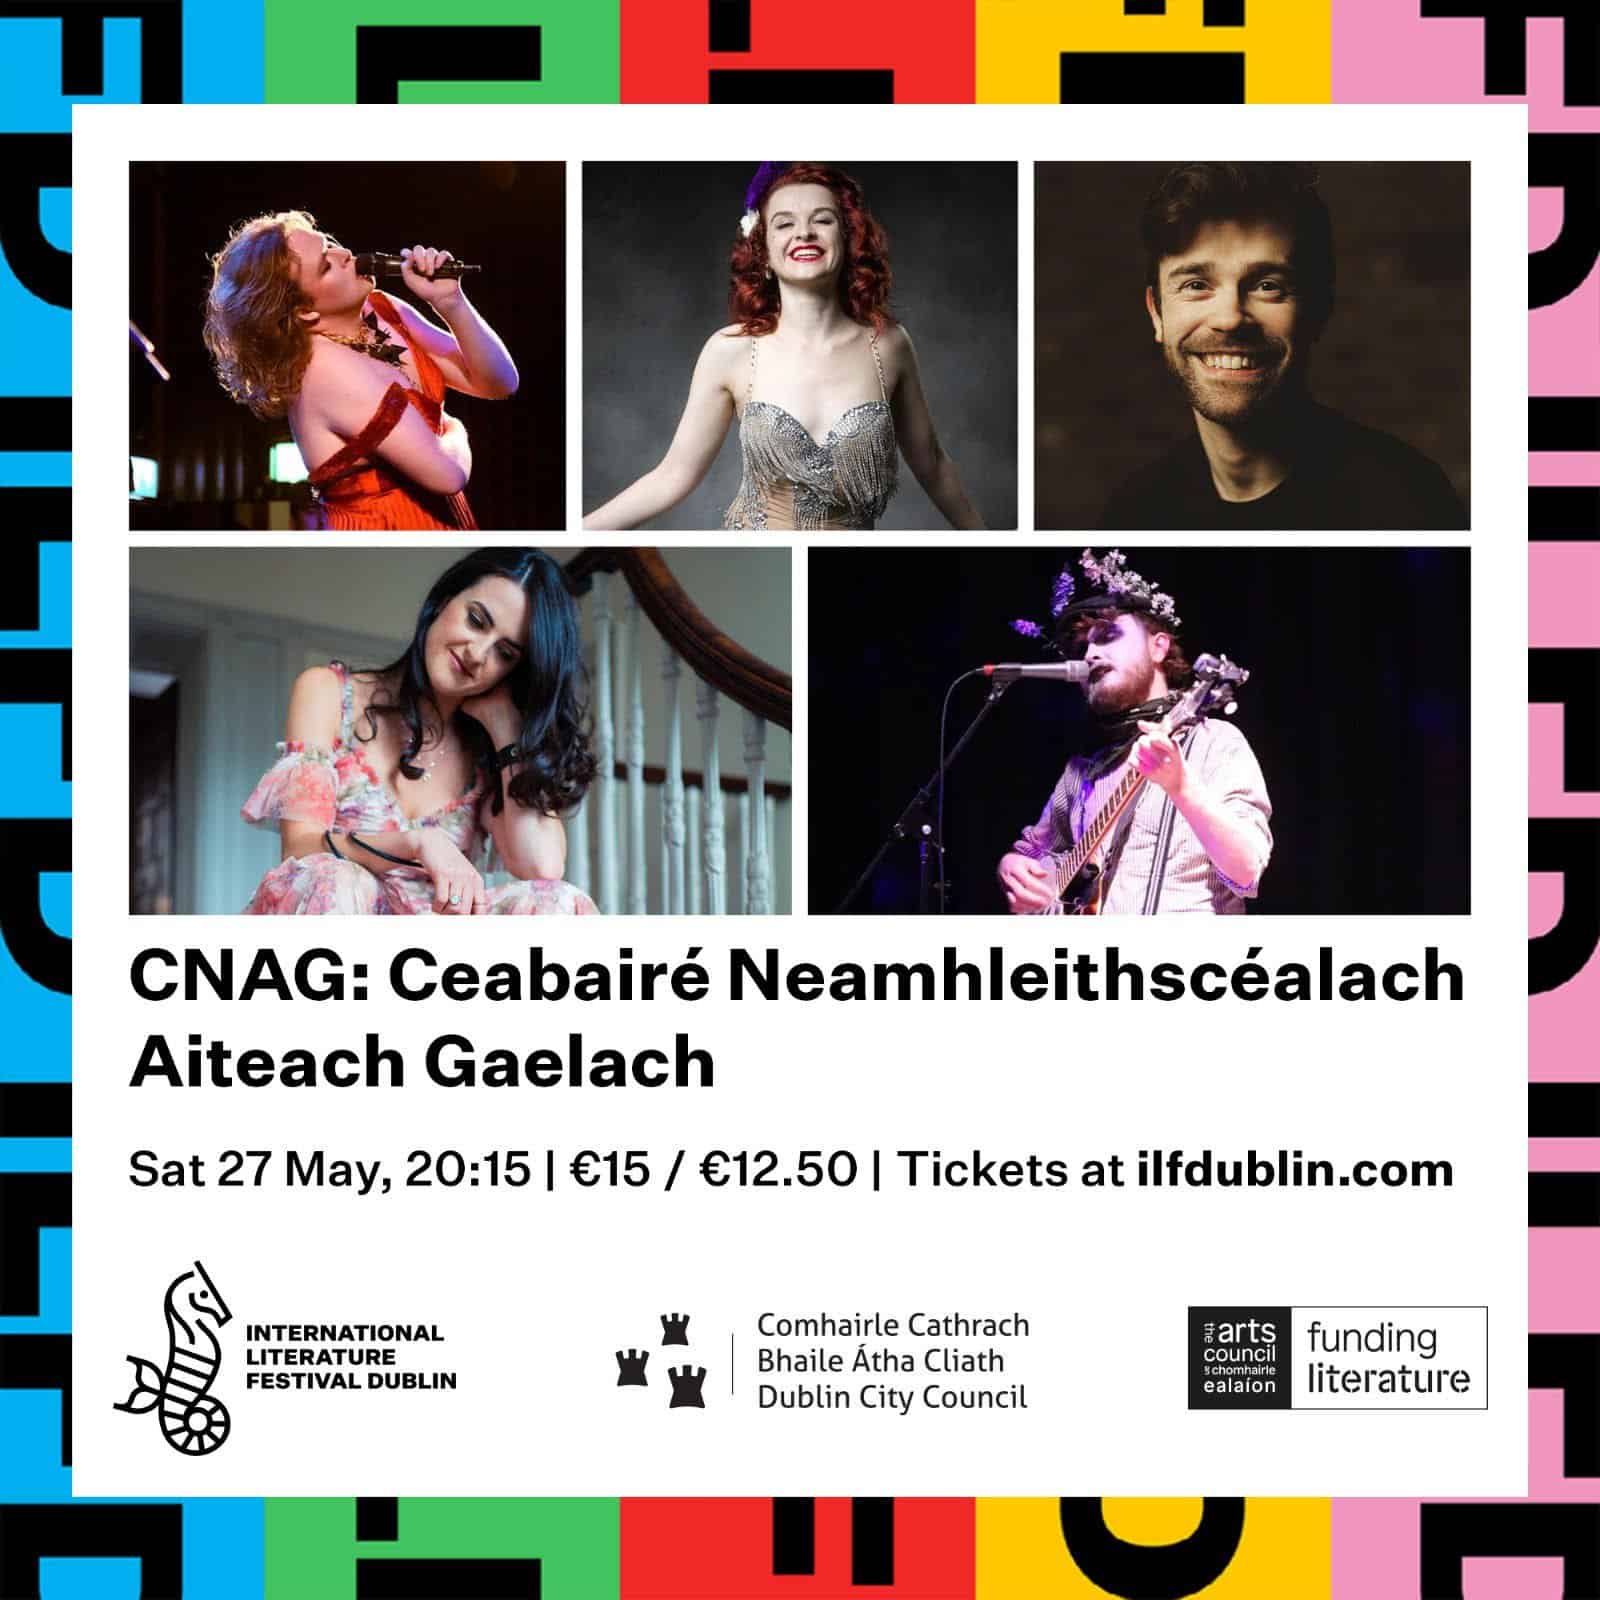 CNAG: Ceabairé Neamhleithscéalach Aiteach Gaelach